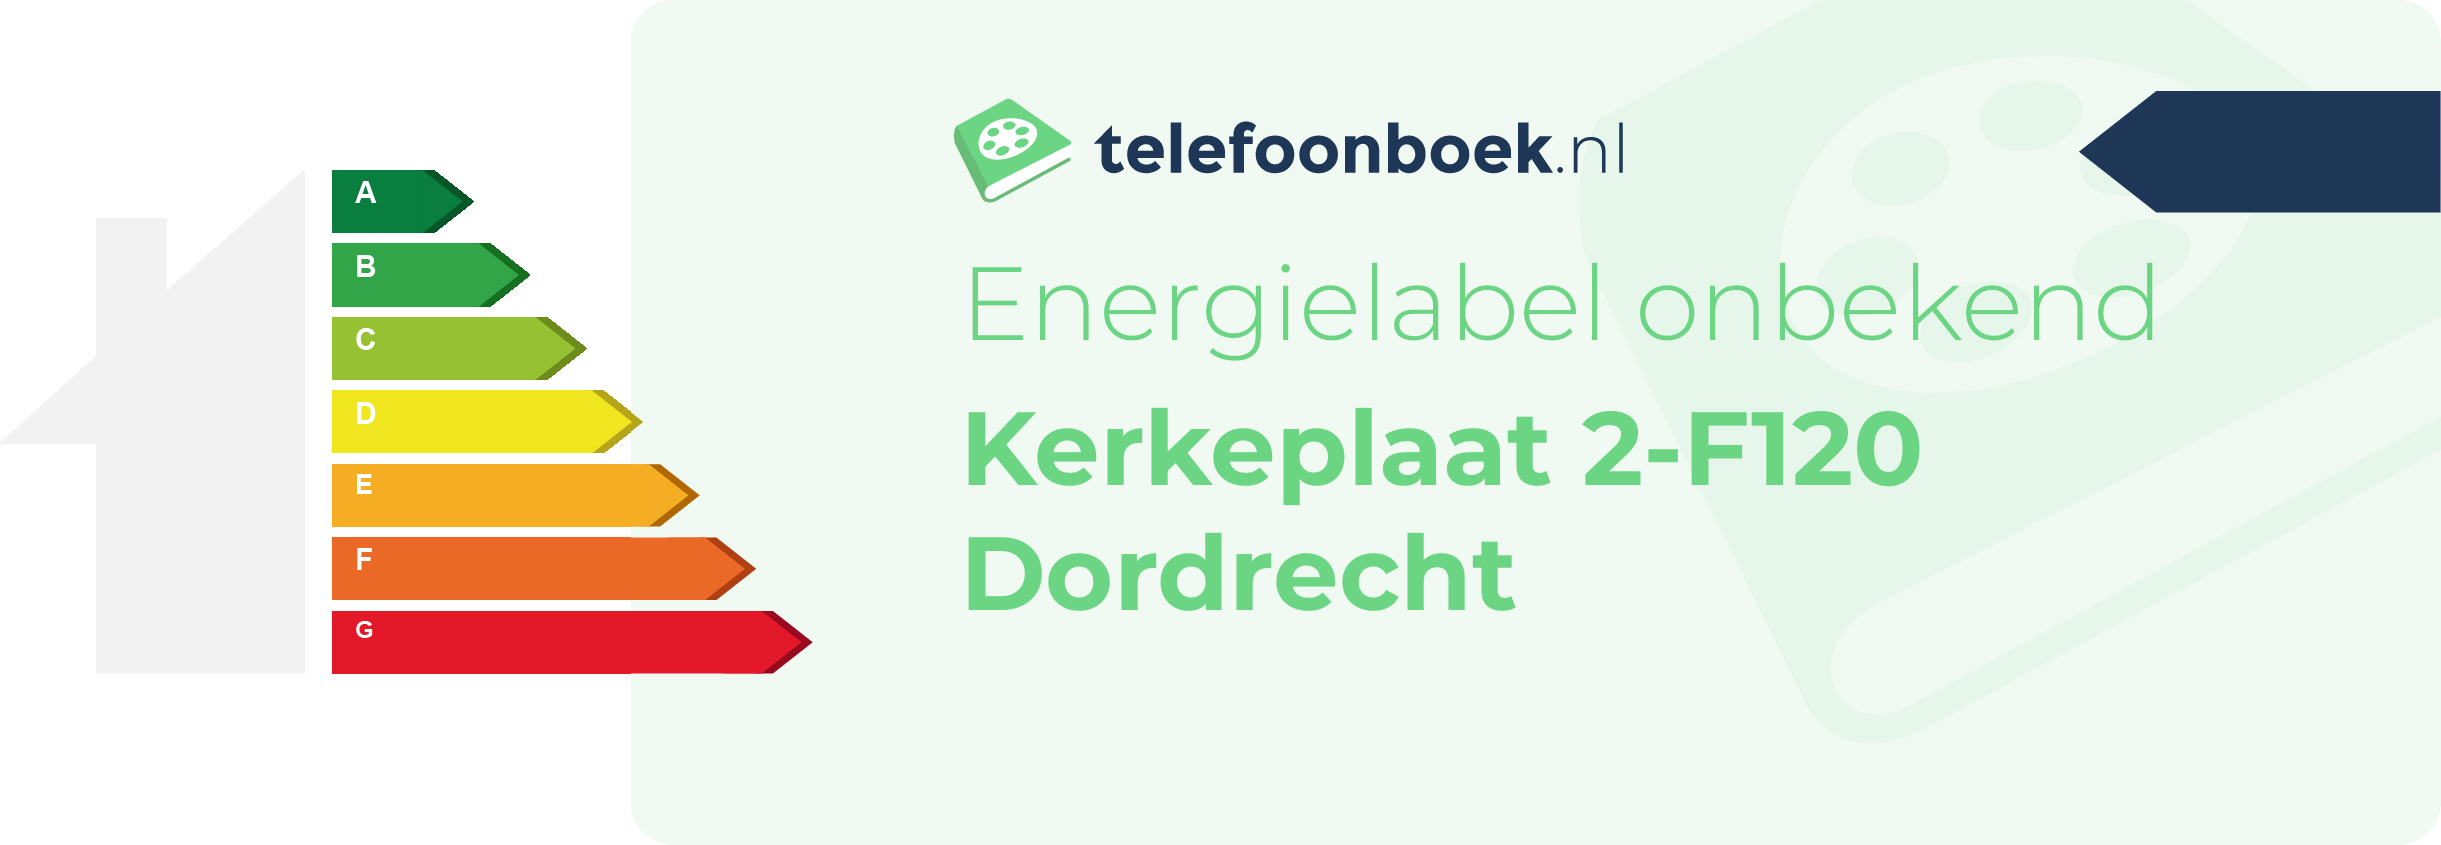 Energielabel Kerkeplaat 2-F120 Dordrecht